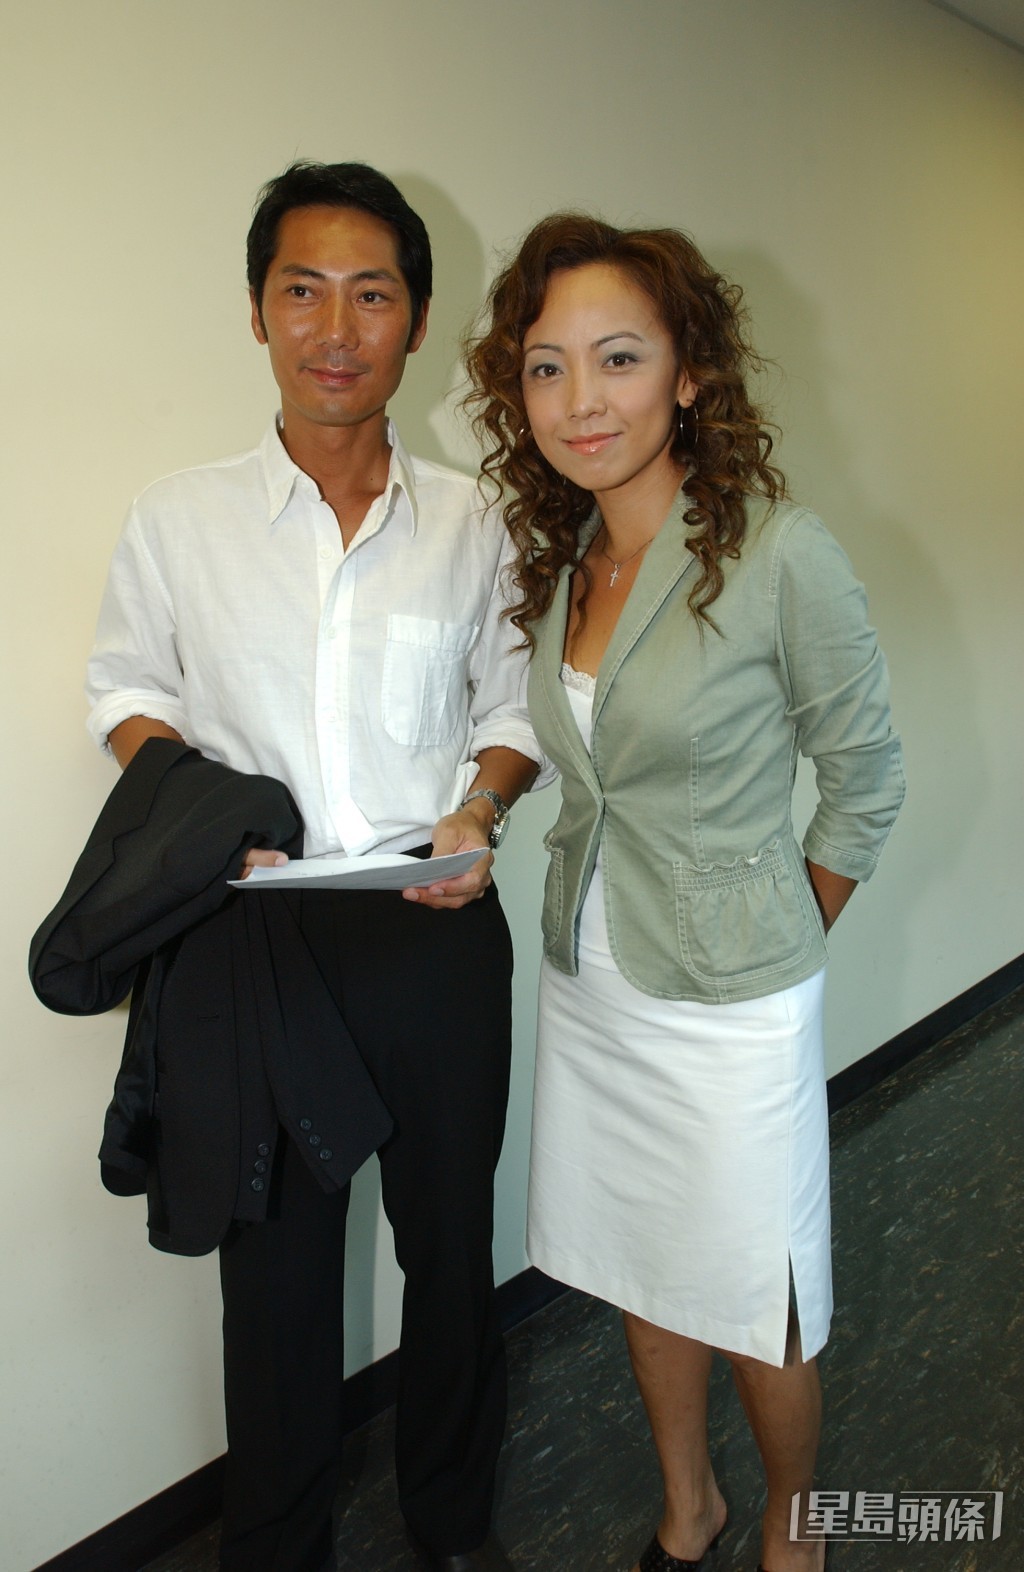 直至2000年代鄧浩光（左）退出娛樂圈並轉行擔任白花油業務組拓展部經理。